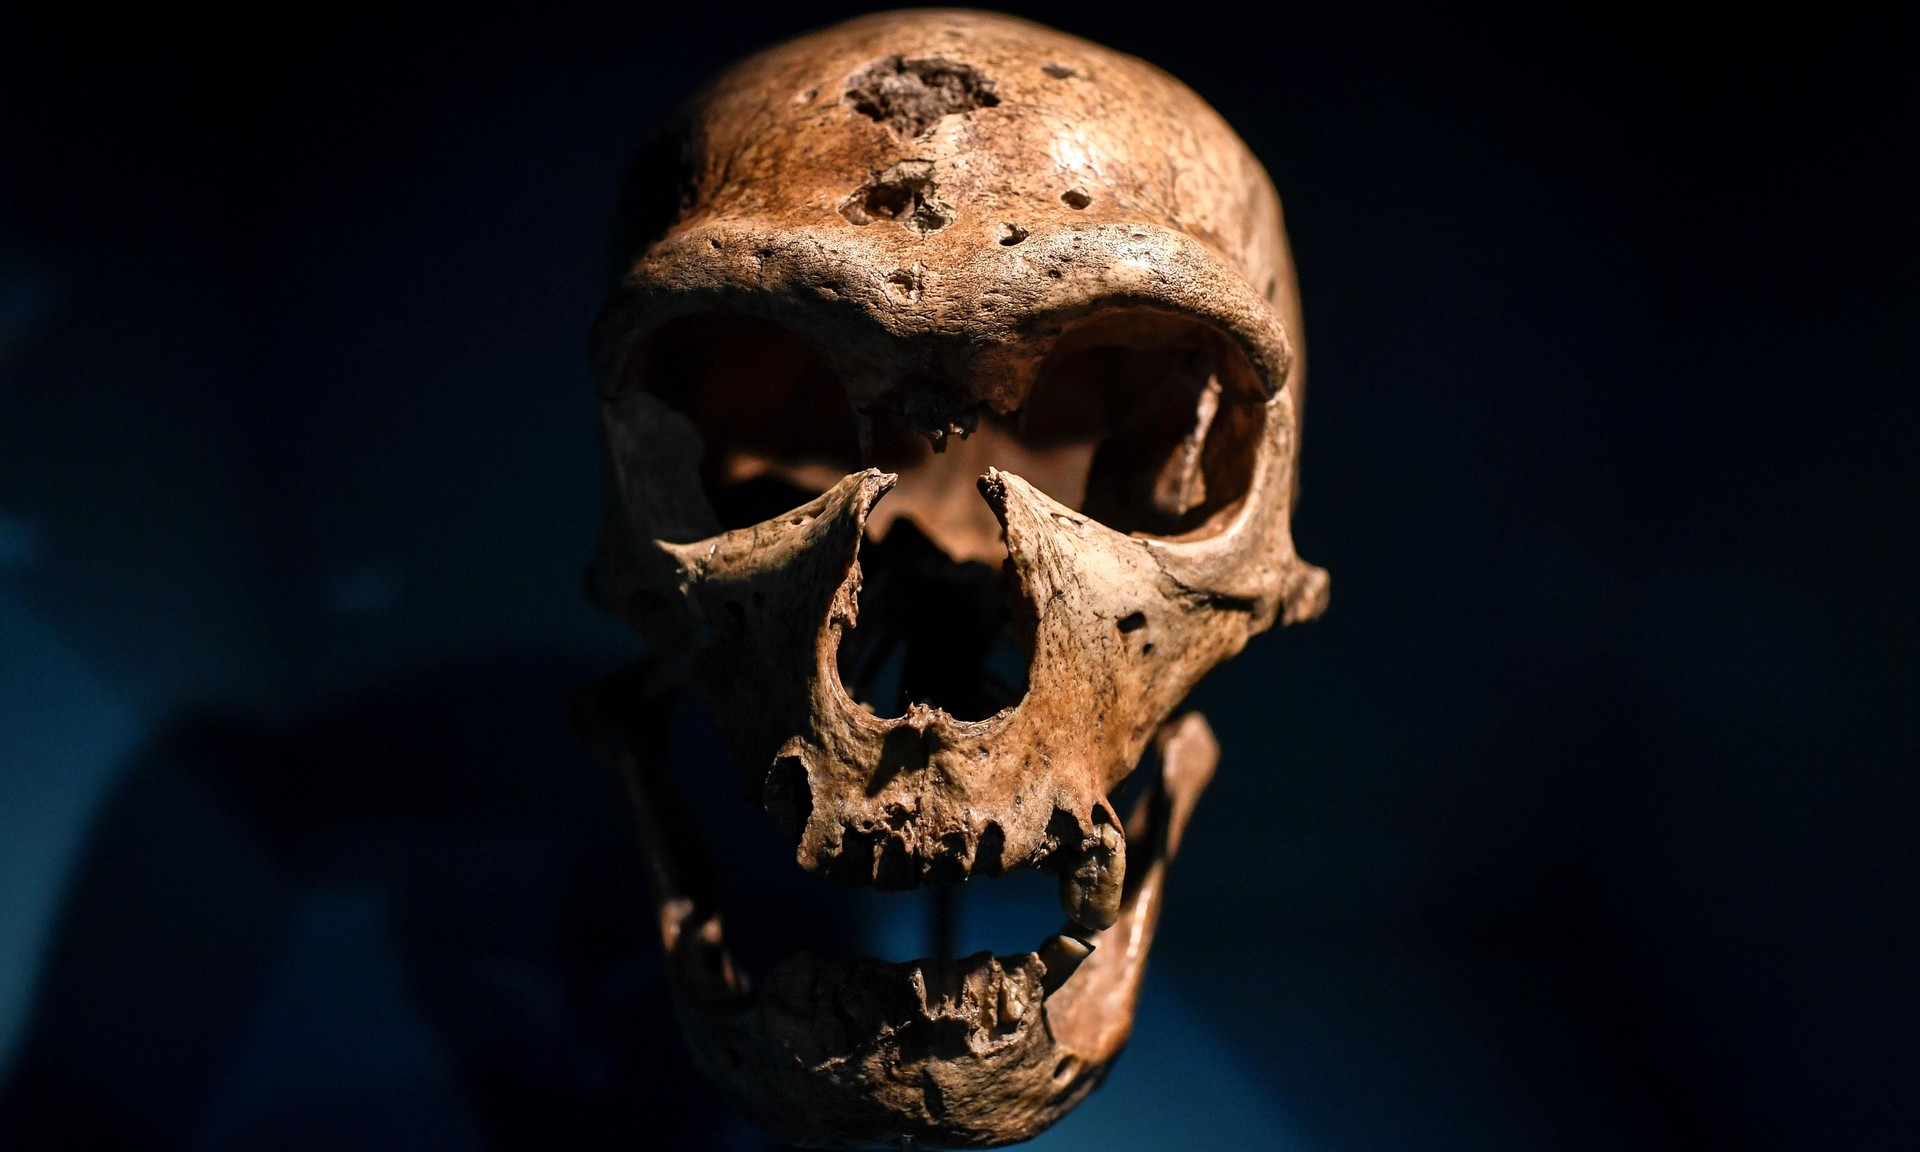 Неандертальцы могли иметь те же группы крови, что и современные люди